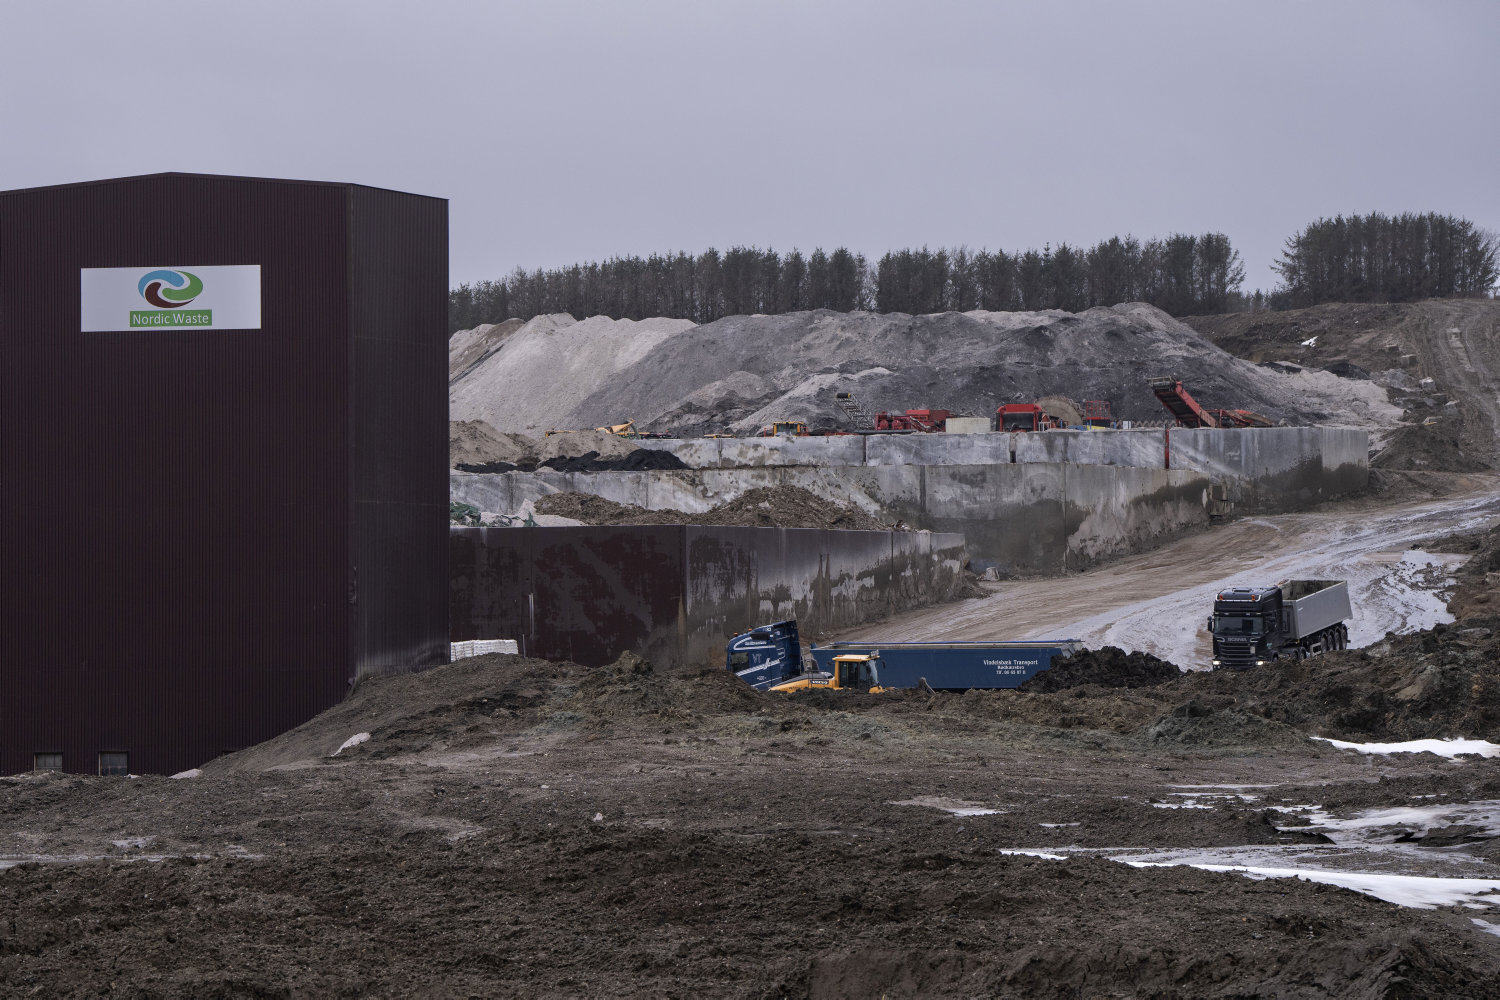 fagforening opfordrer tidligere nordic waste-medarbejdere til lægetjek